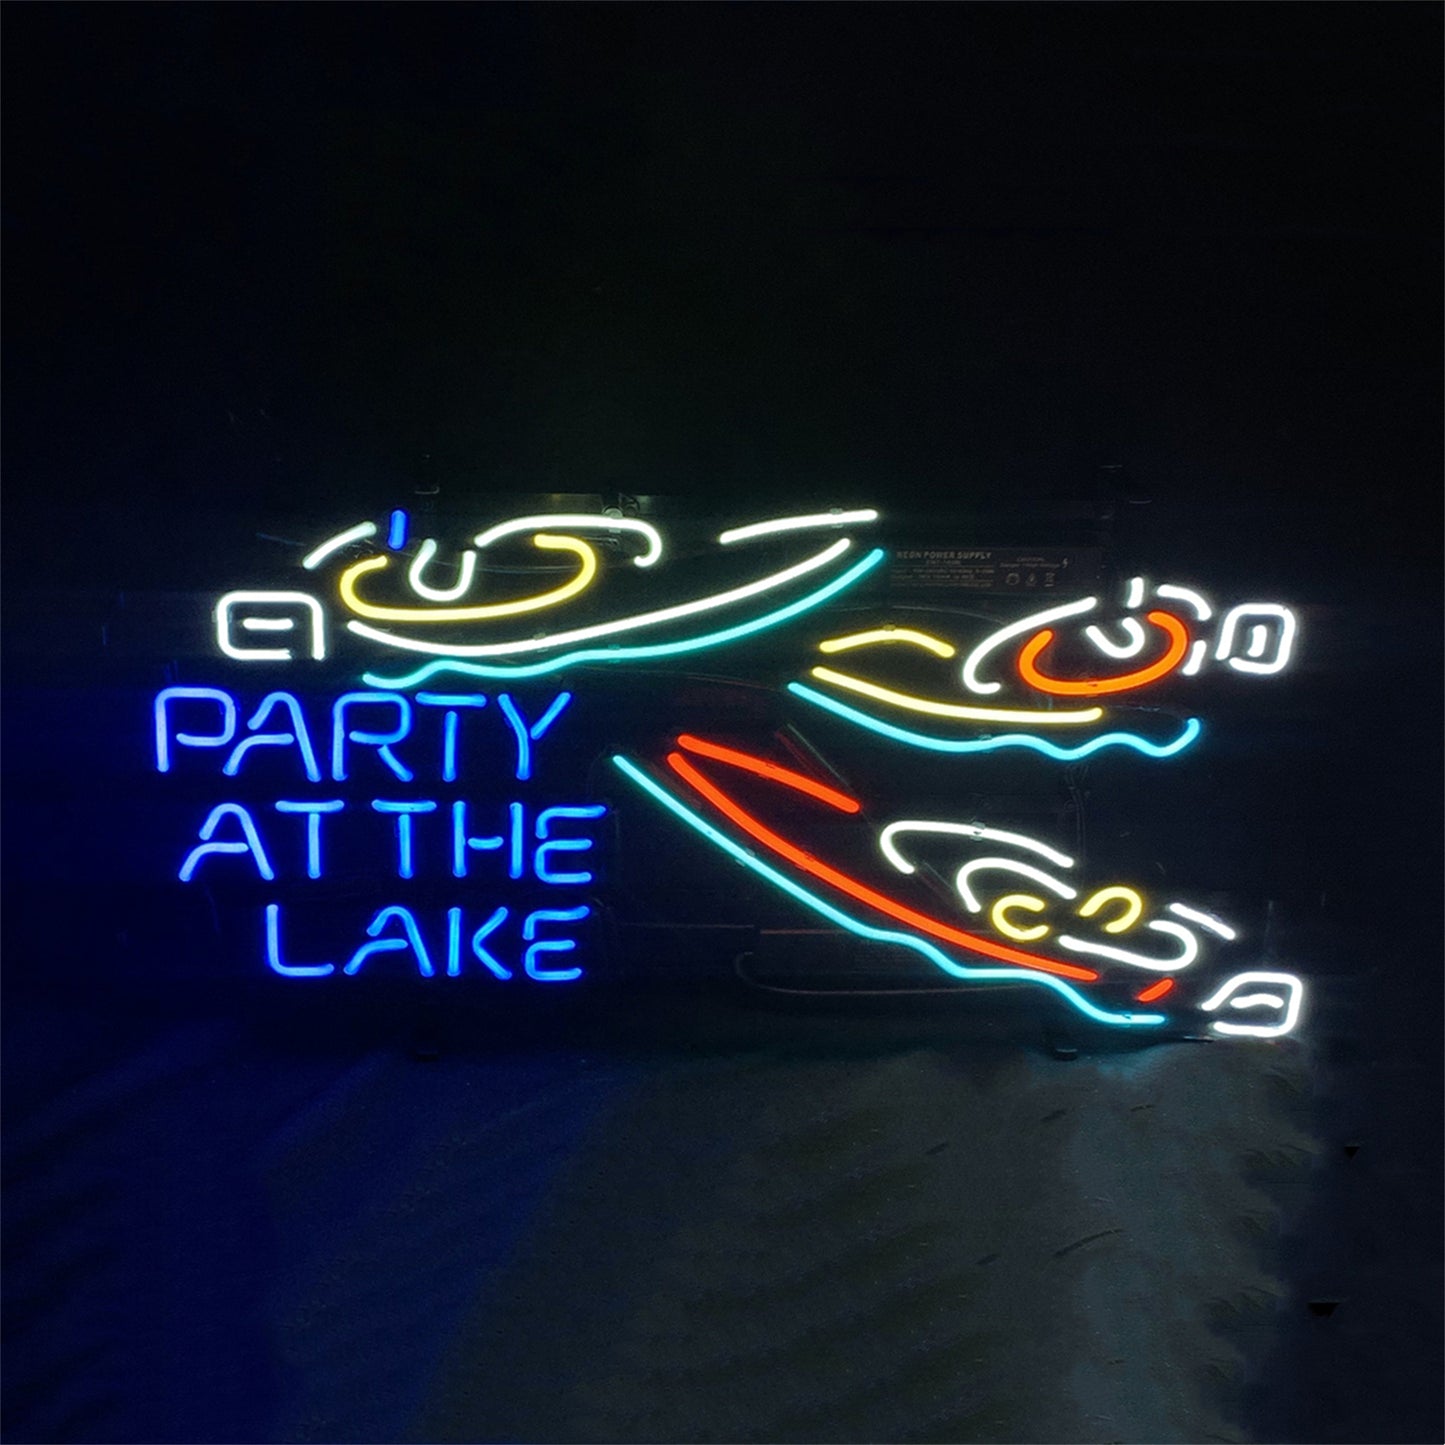 PARTY AT THE LAKE